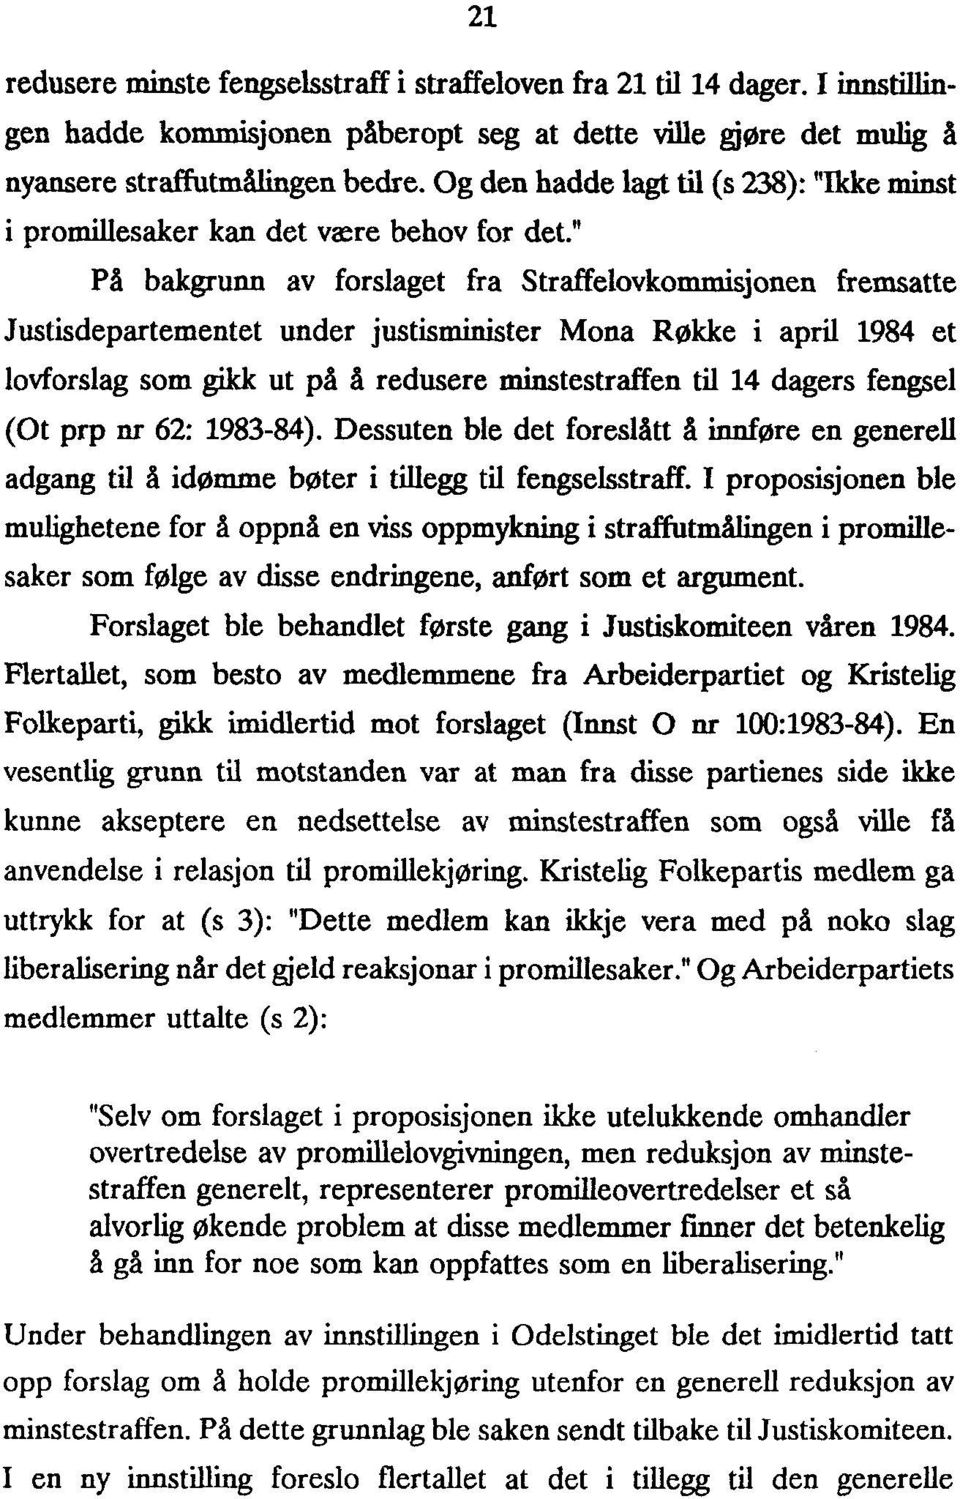 " På bakgrunn av forslaget fra Straffelovkommisjonen fremsatte Justisdepartementet under justisminister Mona Røkke i april 1984 et lovforslag som gikk ut på å redusere minstestraffen til 14 dagers